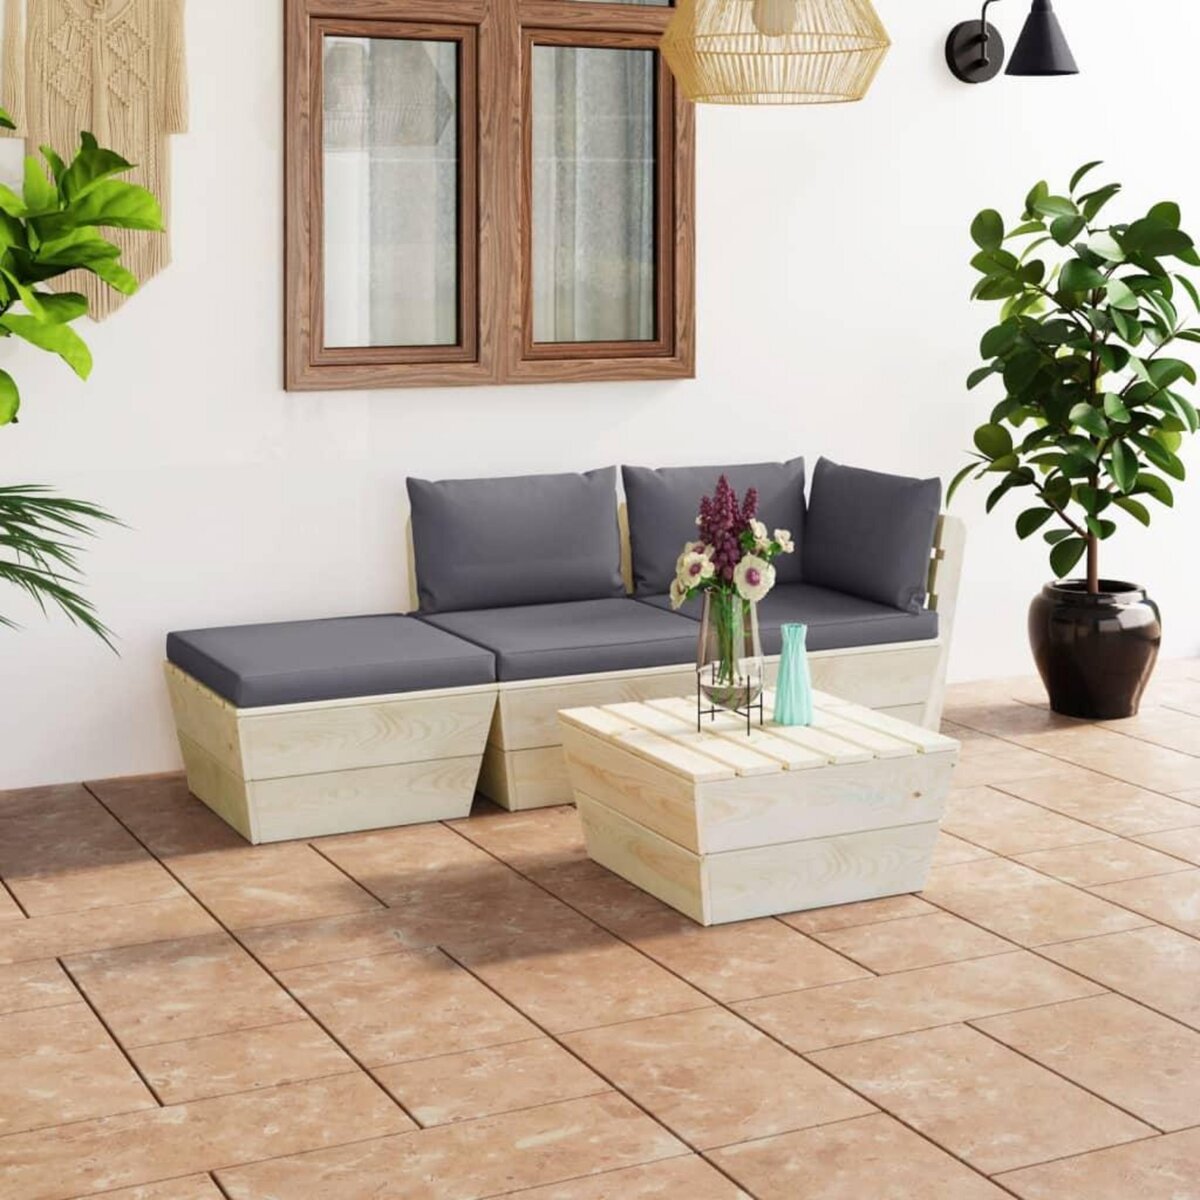 VIDAXL Salon de jardin palette 4 pcs avec coussins Epicea impregne